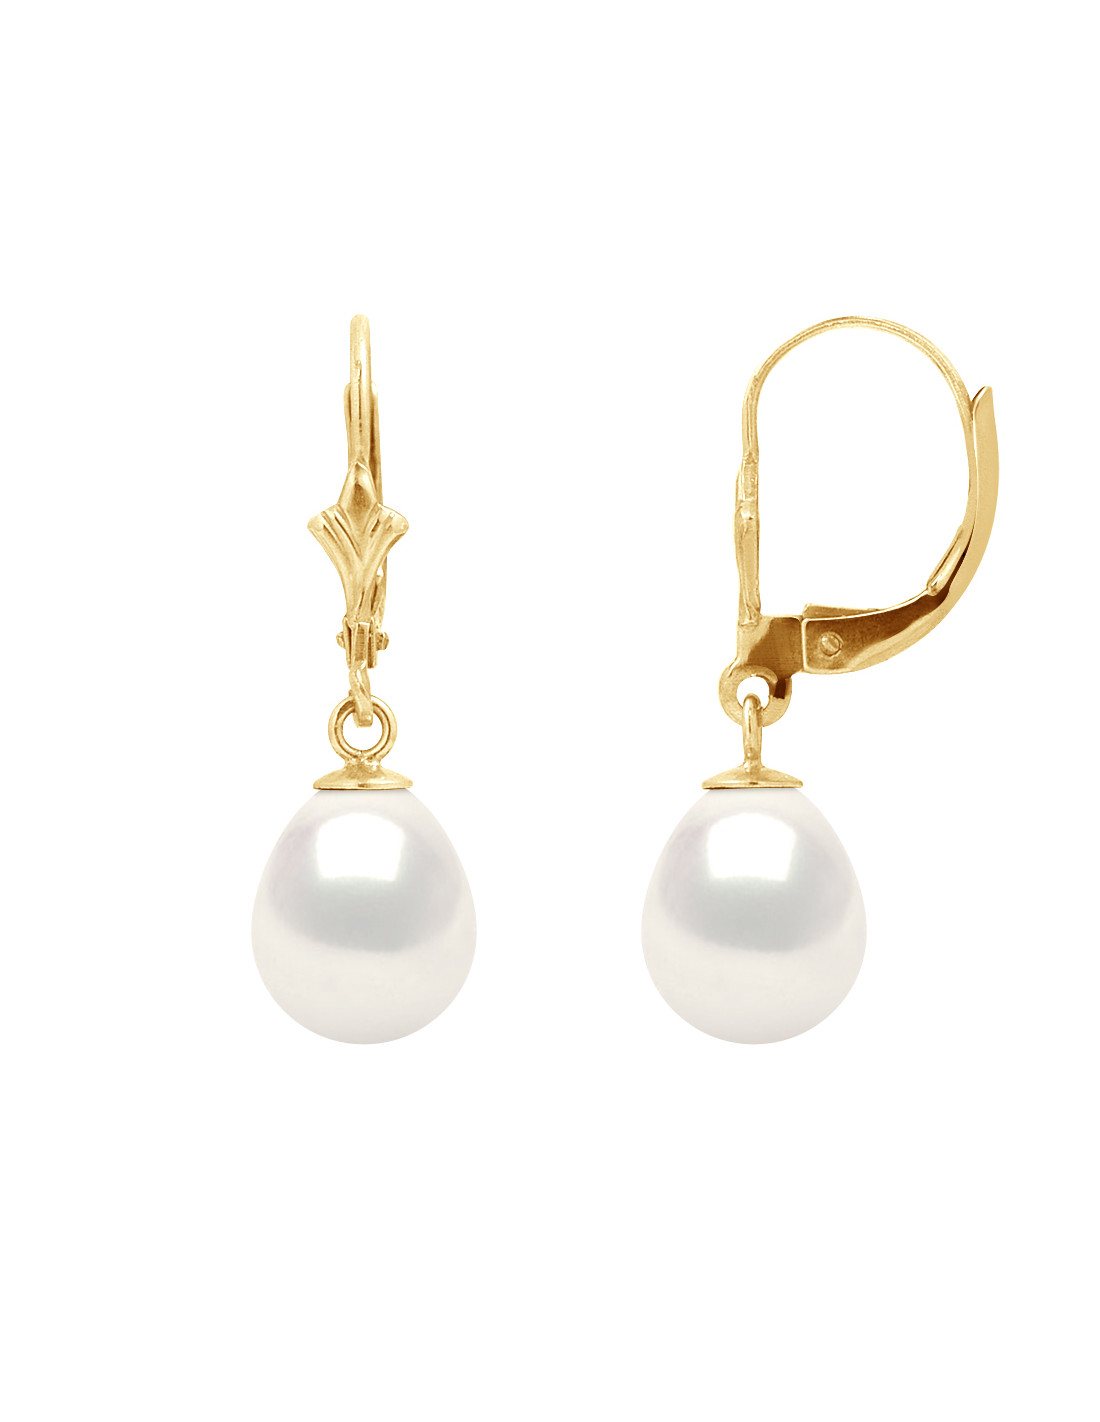 Boucles d'Oreilles Pendantes Perles de Culture Poires - 2 Coloris